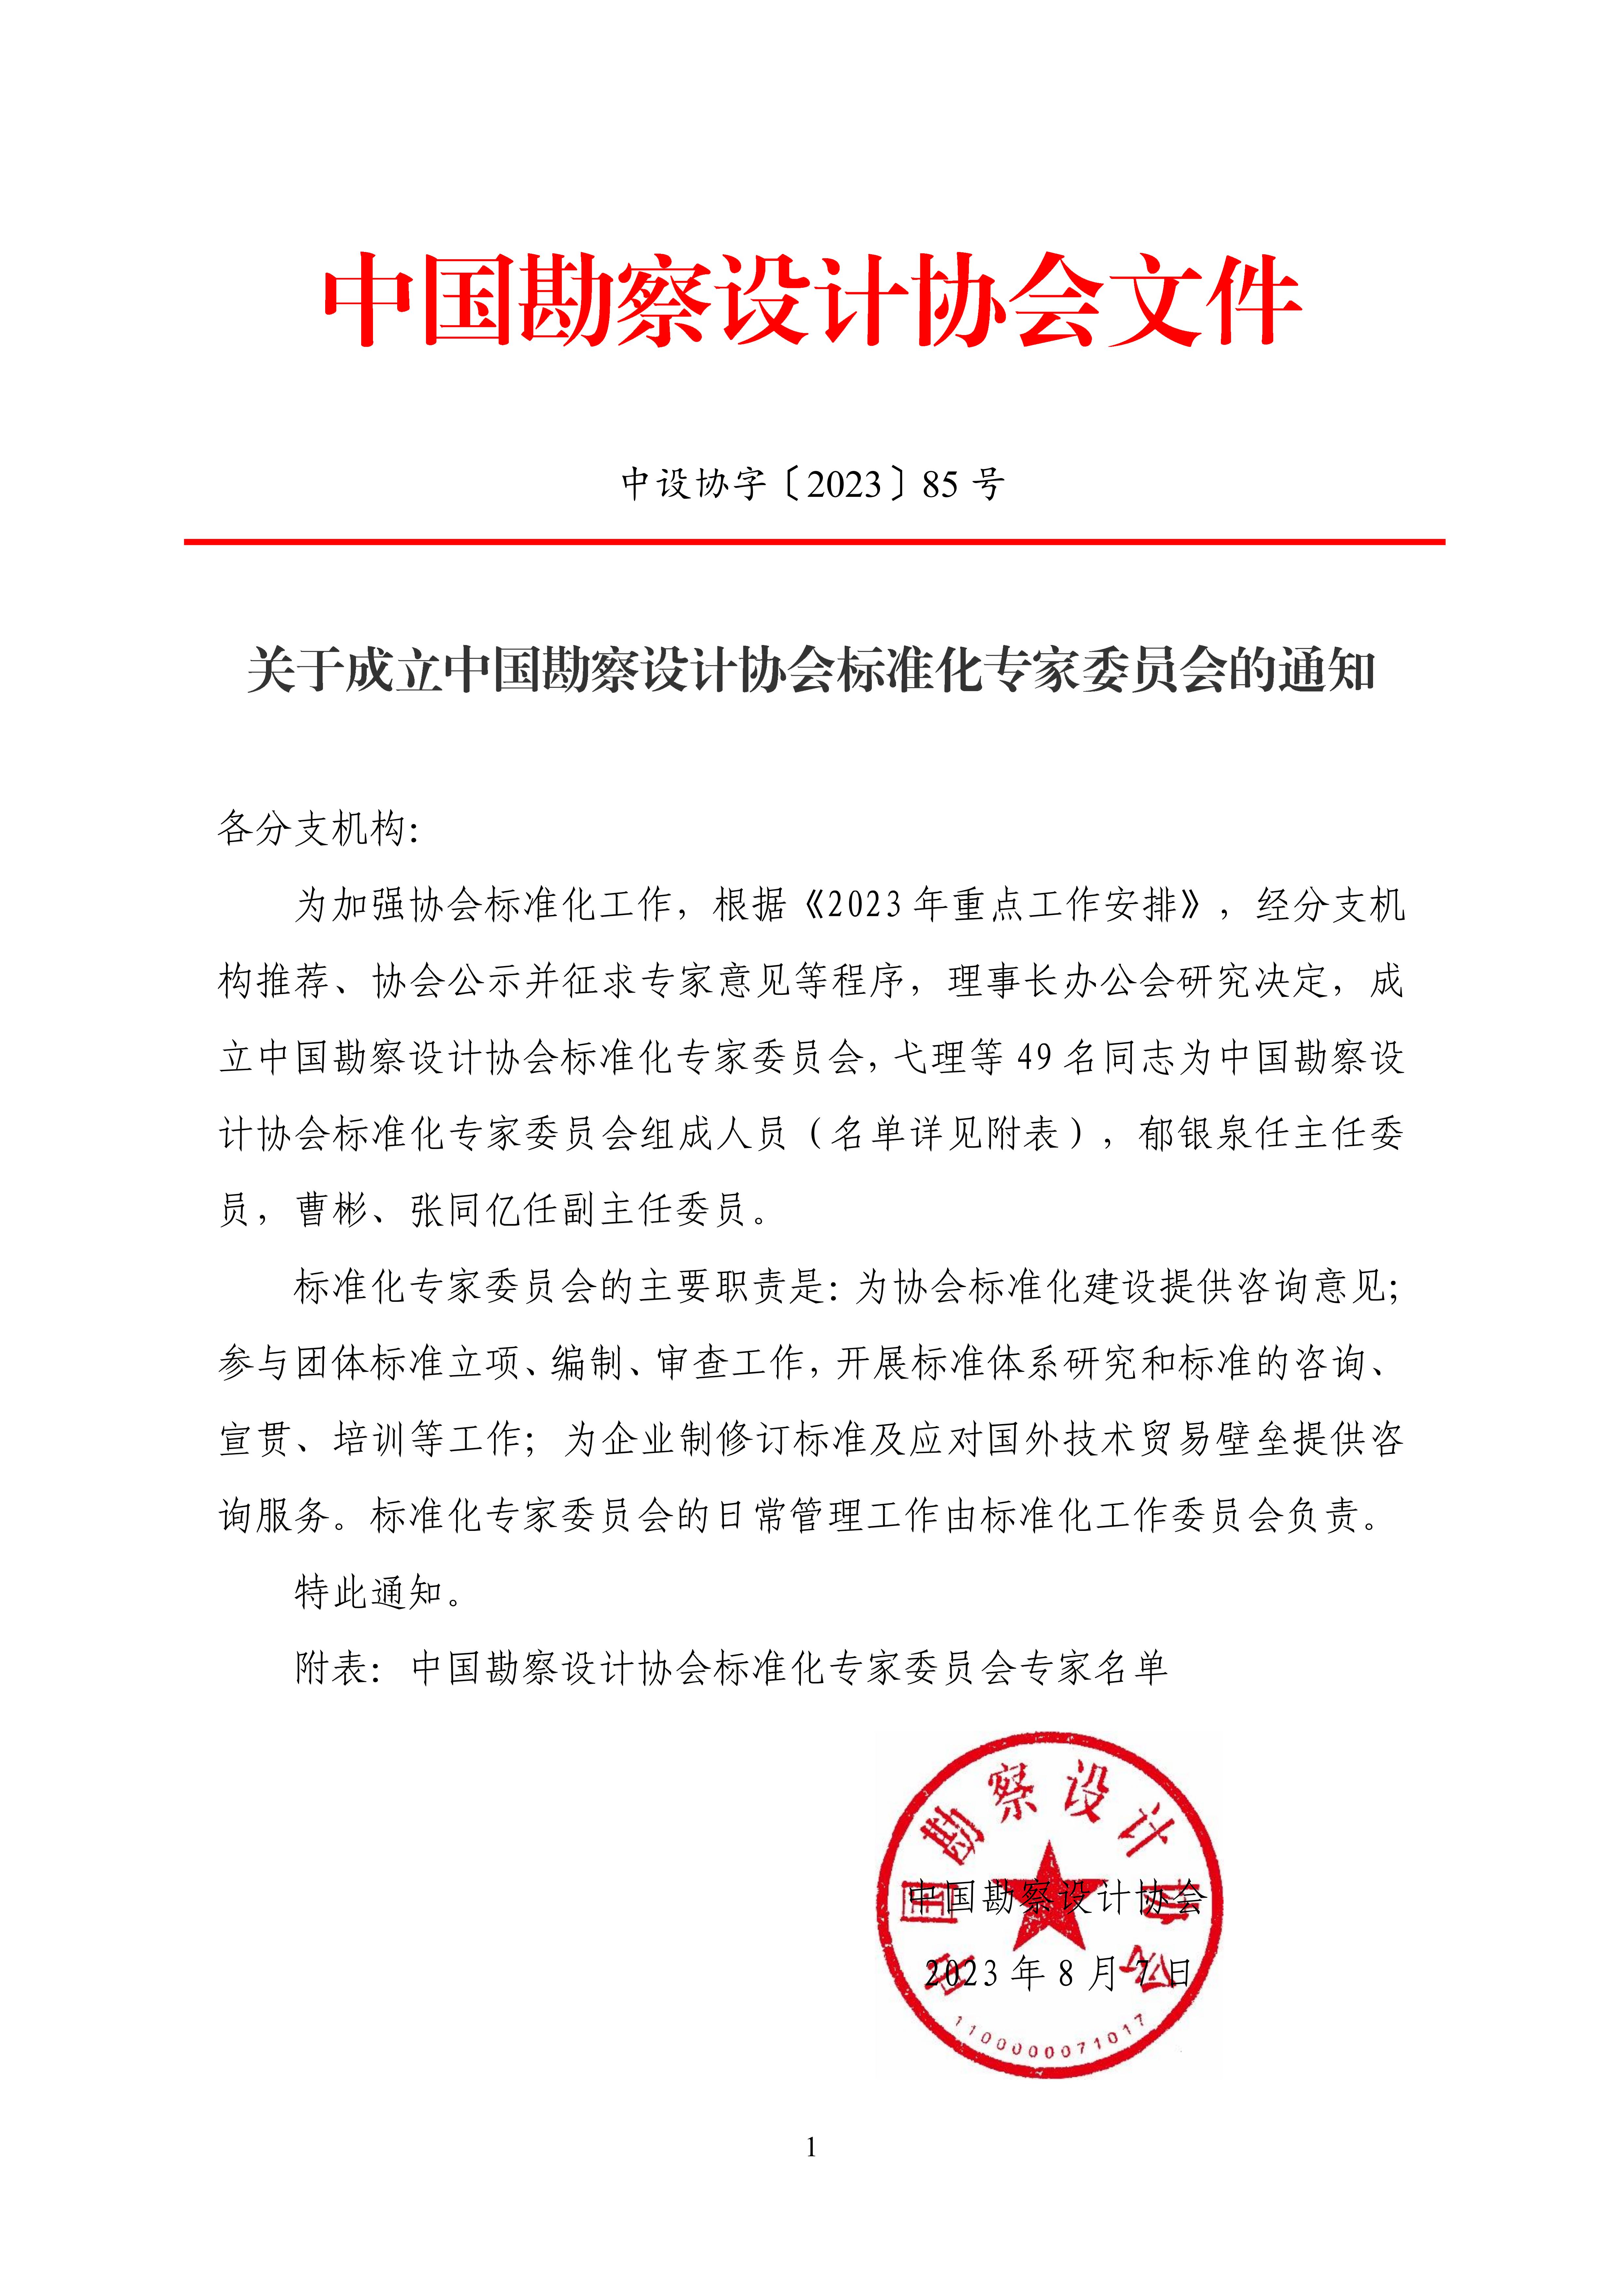 中设协字〔2023〕85号关于成立中国勘察设计协会标准化专家委员会的通知_00.jpg